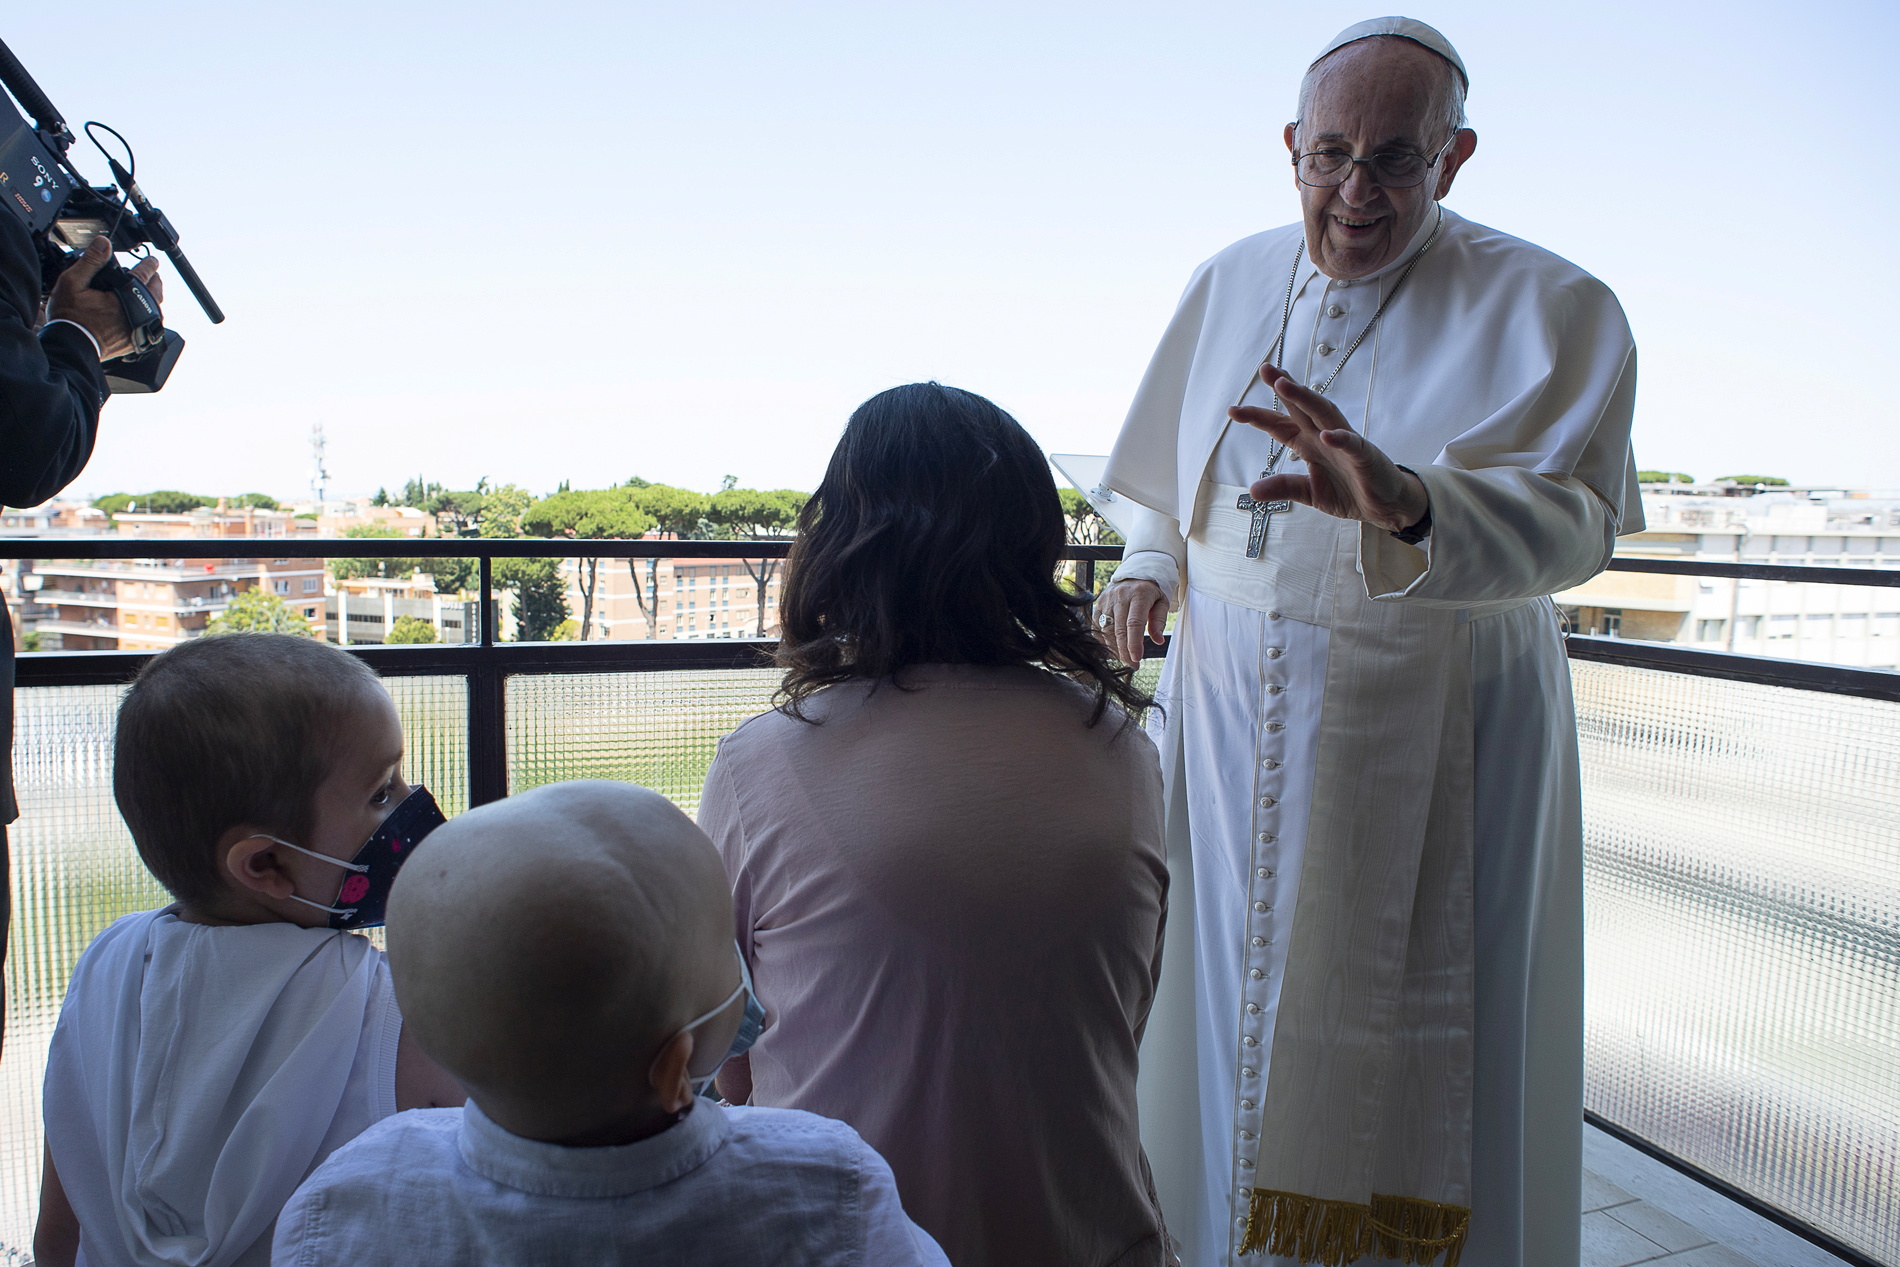 Al papa, de 84 años, le acompañaban varios niños pacientes del departamento oncológico del hospital. (Vatican Media via REUTERS)